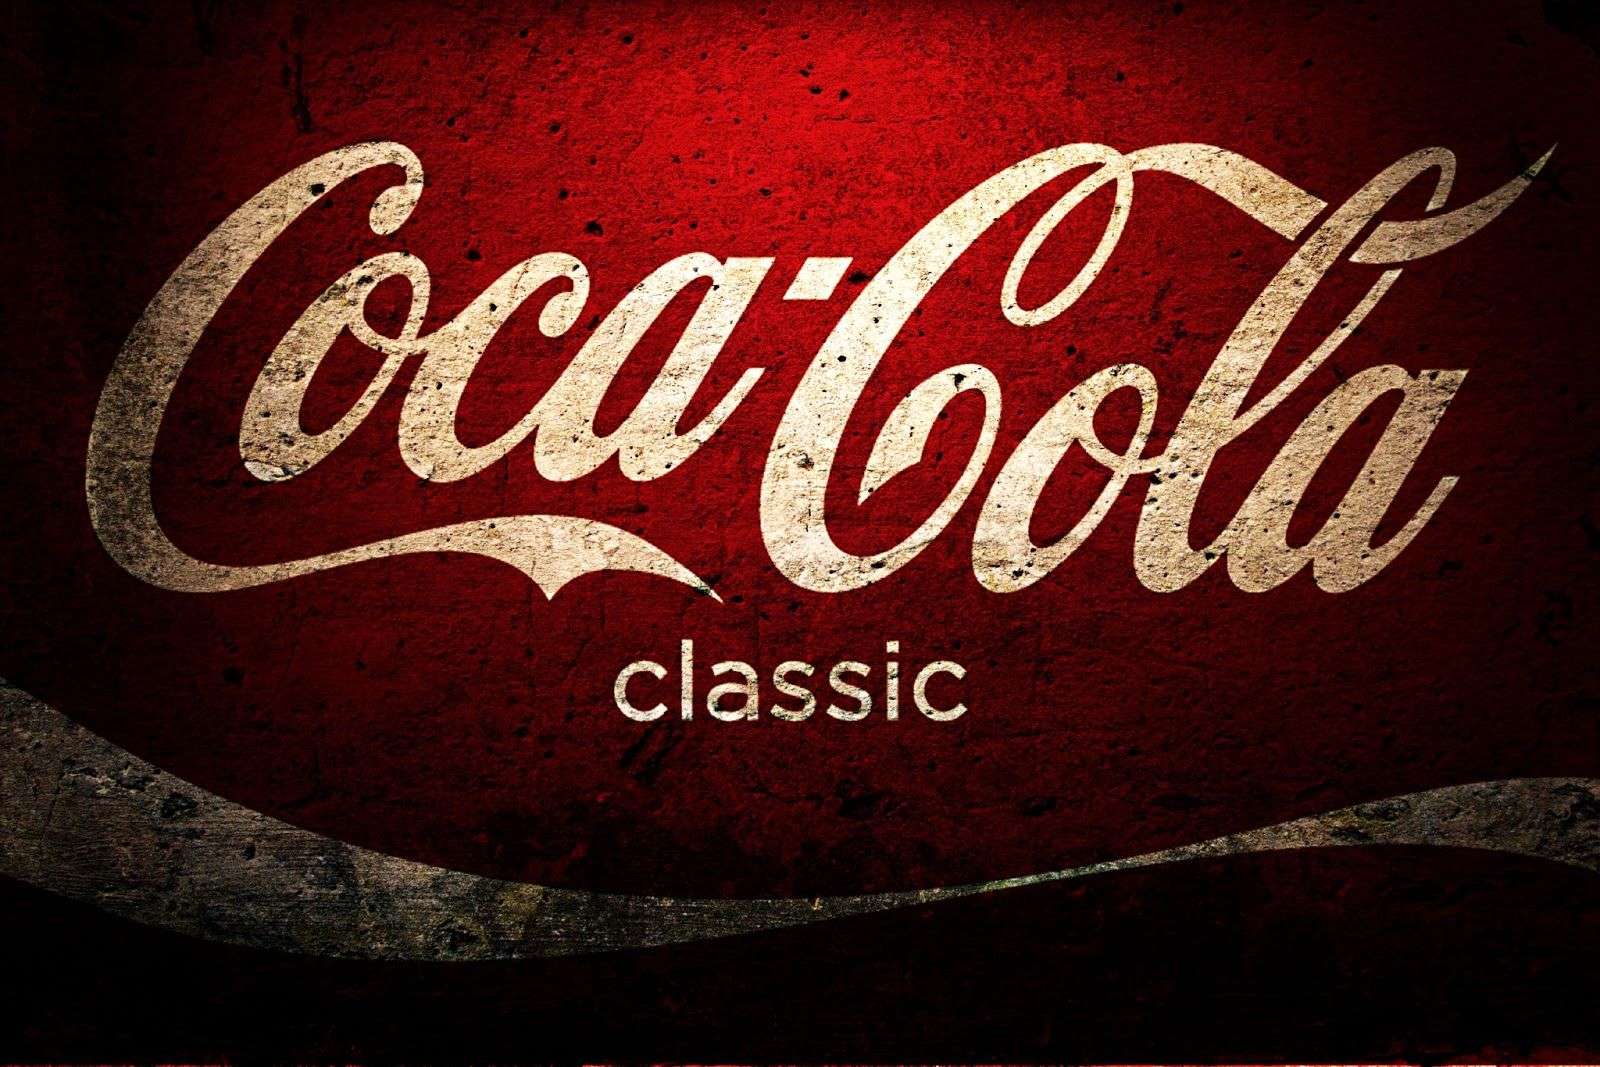 Η Coca-Cola ανανεώνει την ενοποιημένη στρατηγική συσκευασίας